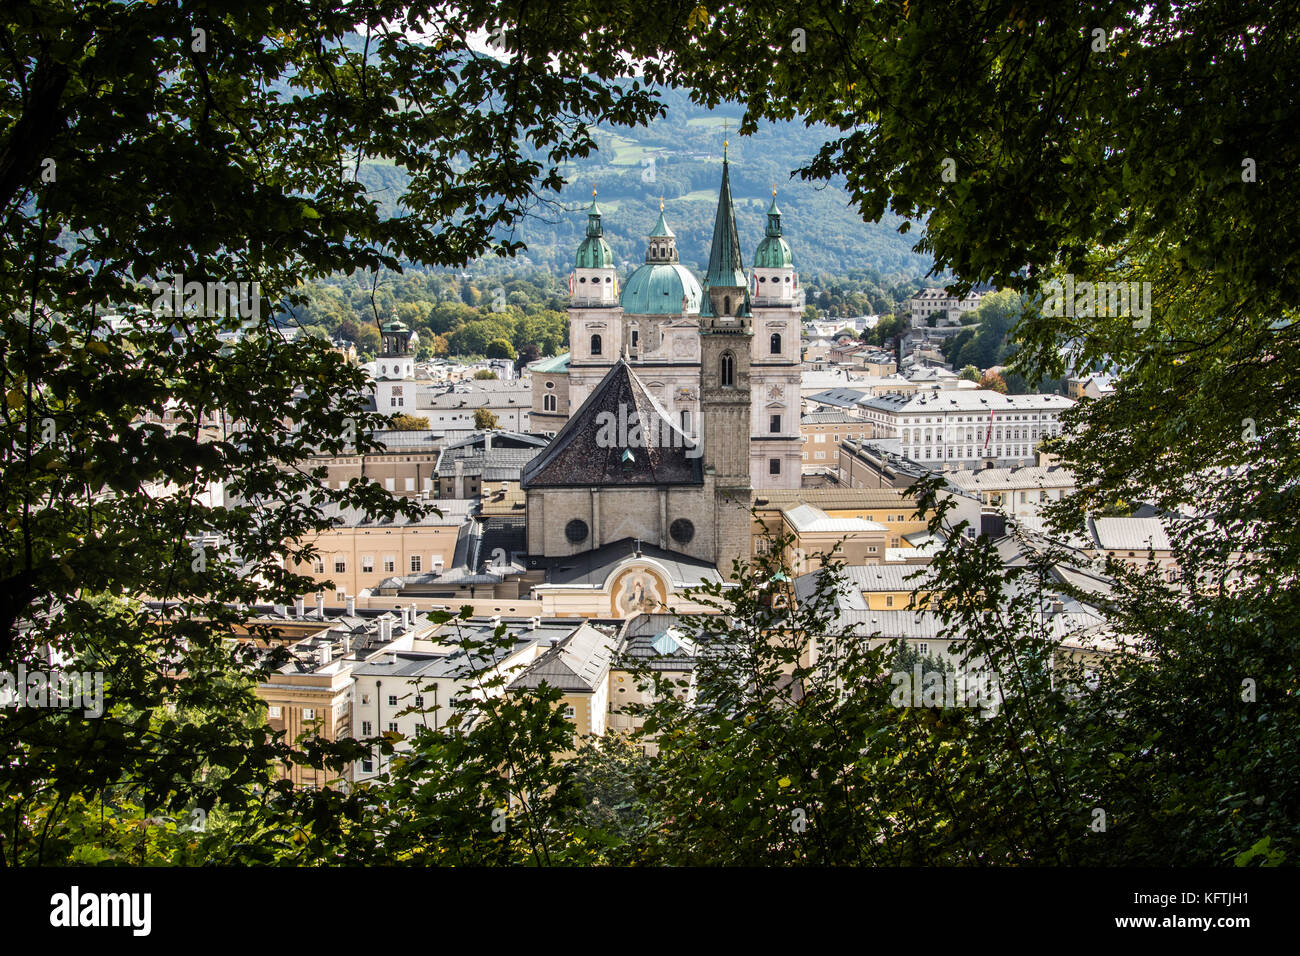 Old Town Salzburg, Austria Stock Photo